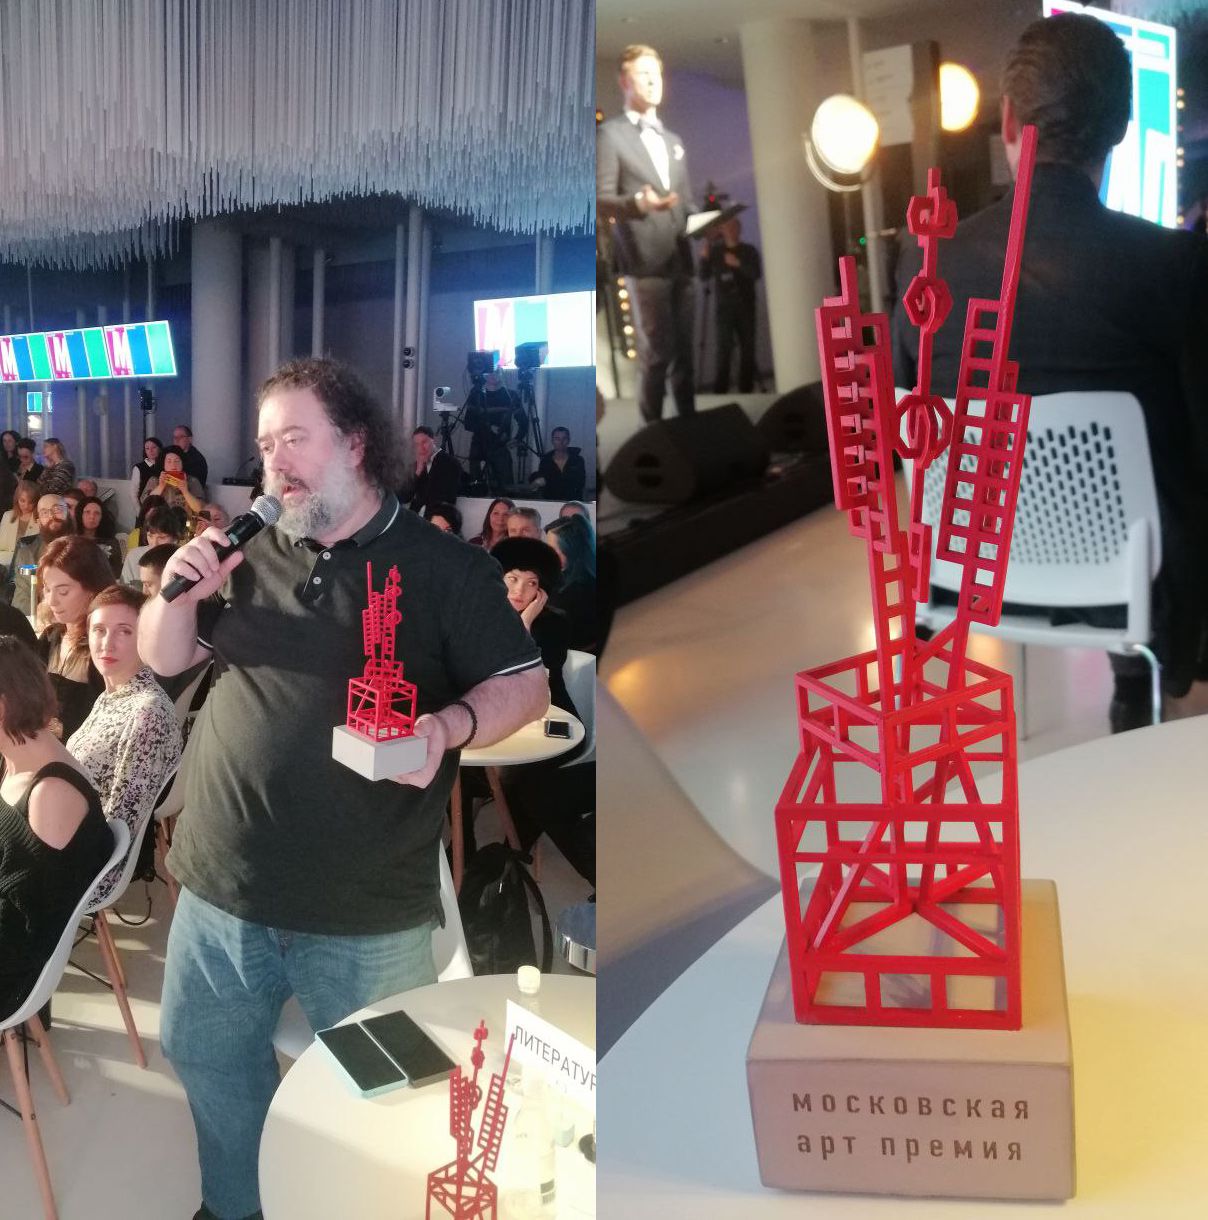 Дмитрий Данилов получил главный приз «Московской Aрт Премии» в номинации «Литература» / Михаил Визель